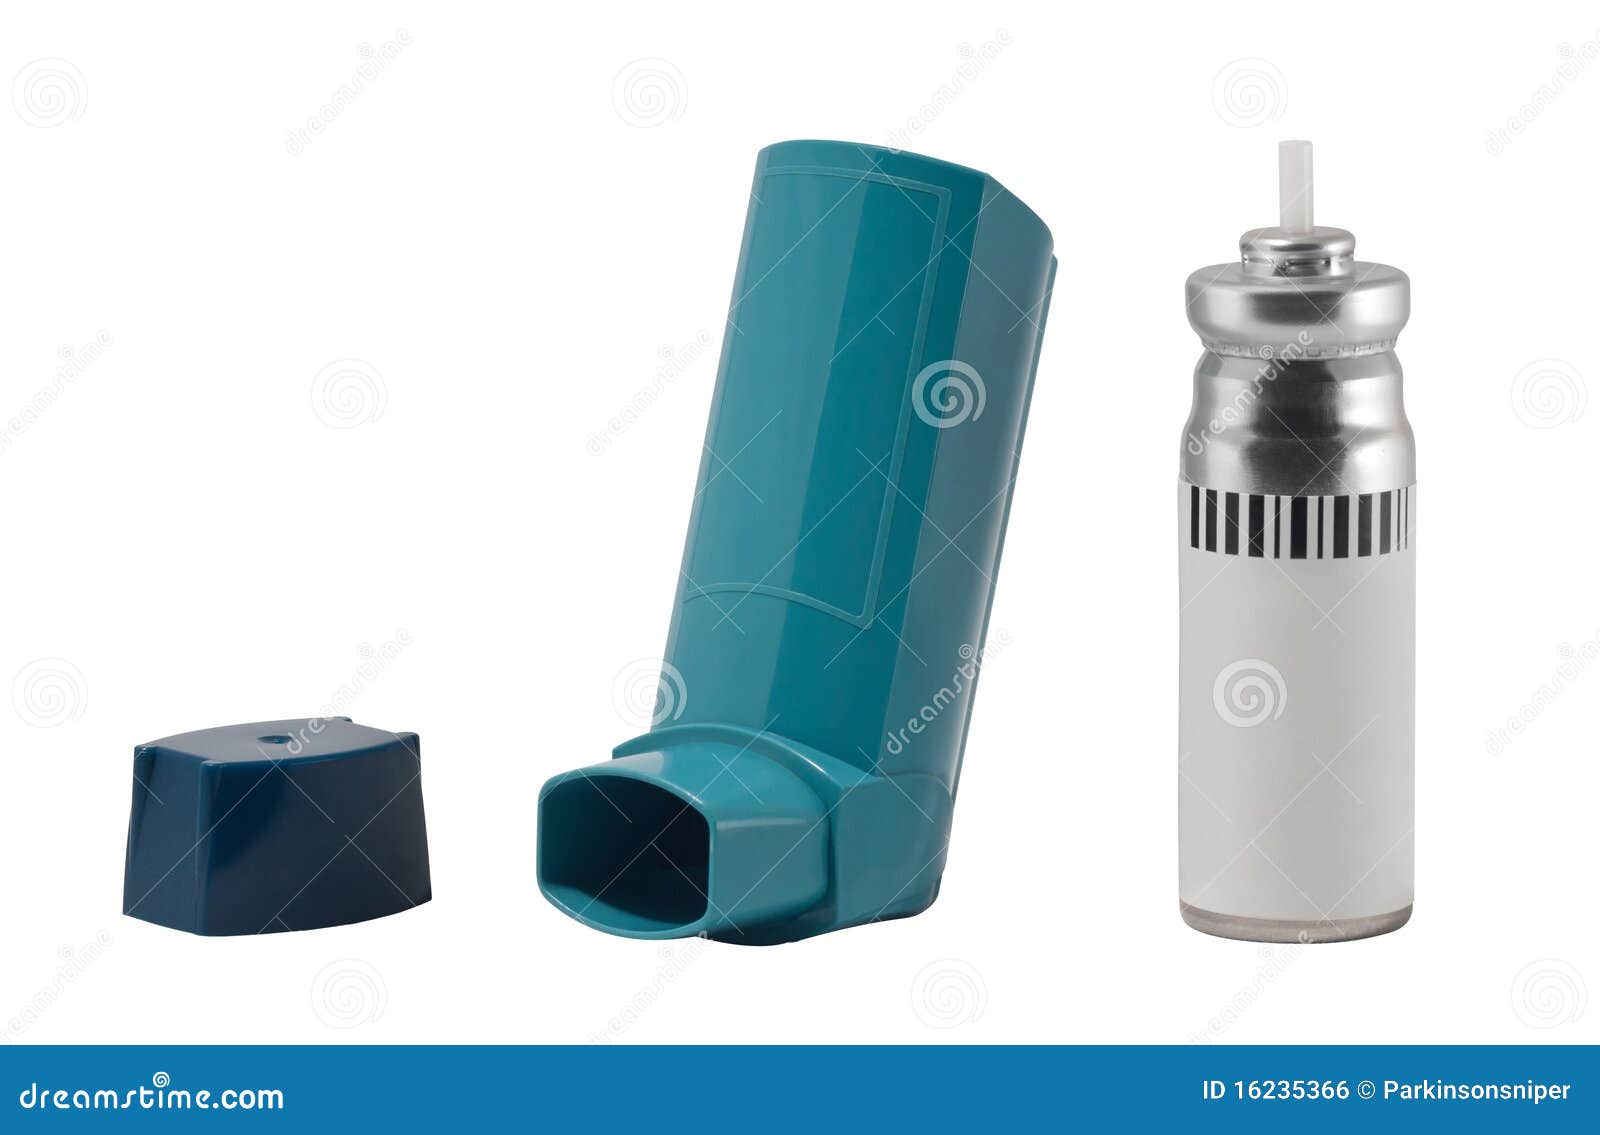 科学网—哮喘病人用的智能吸入器 - 丁文京的博文